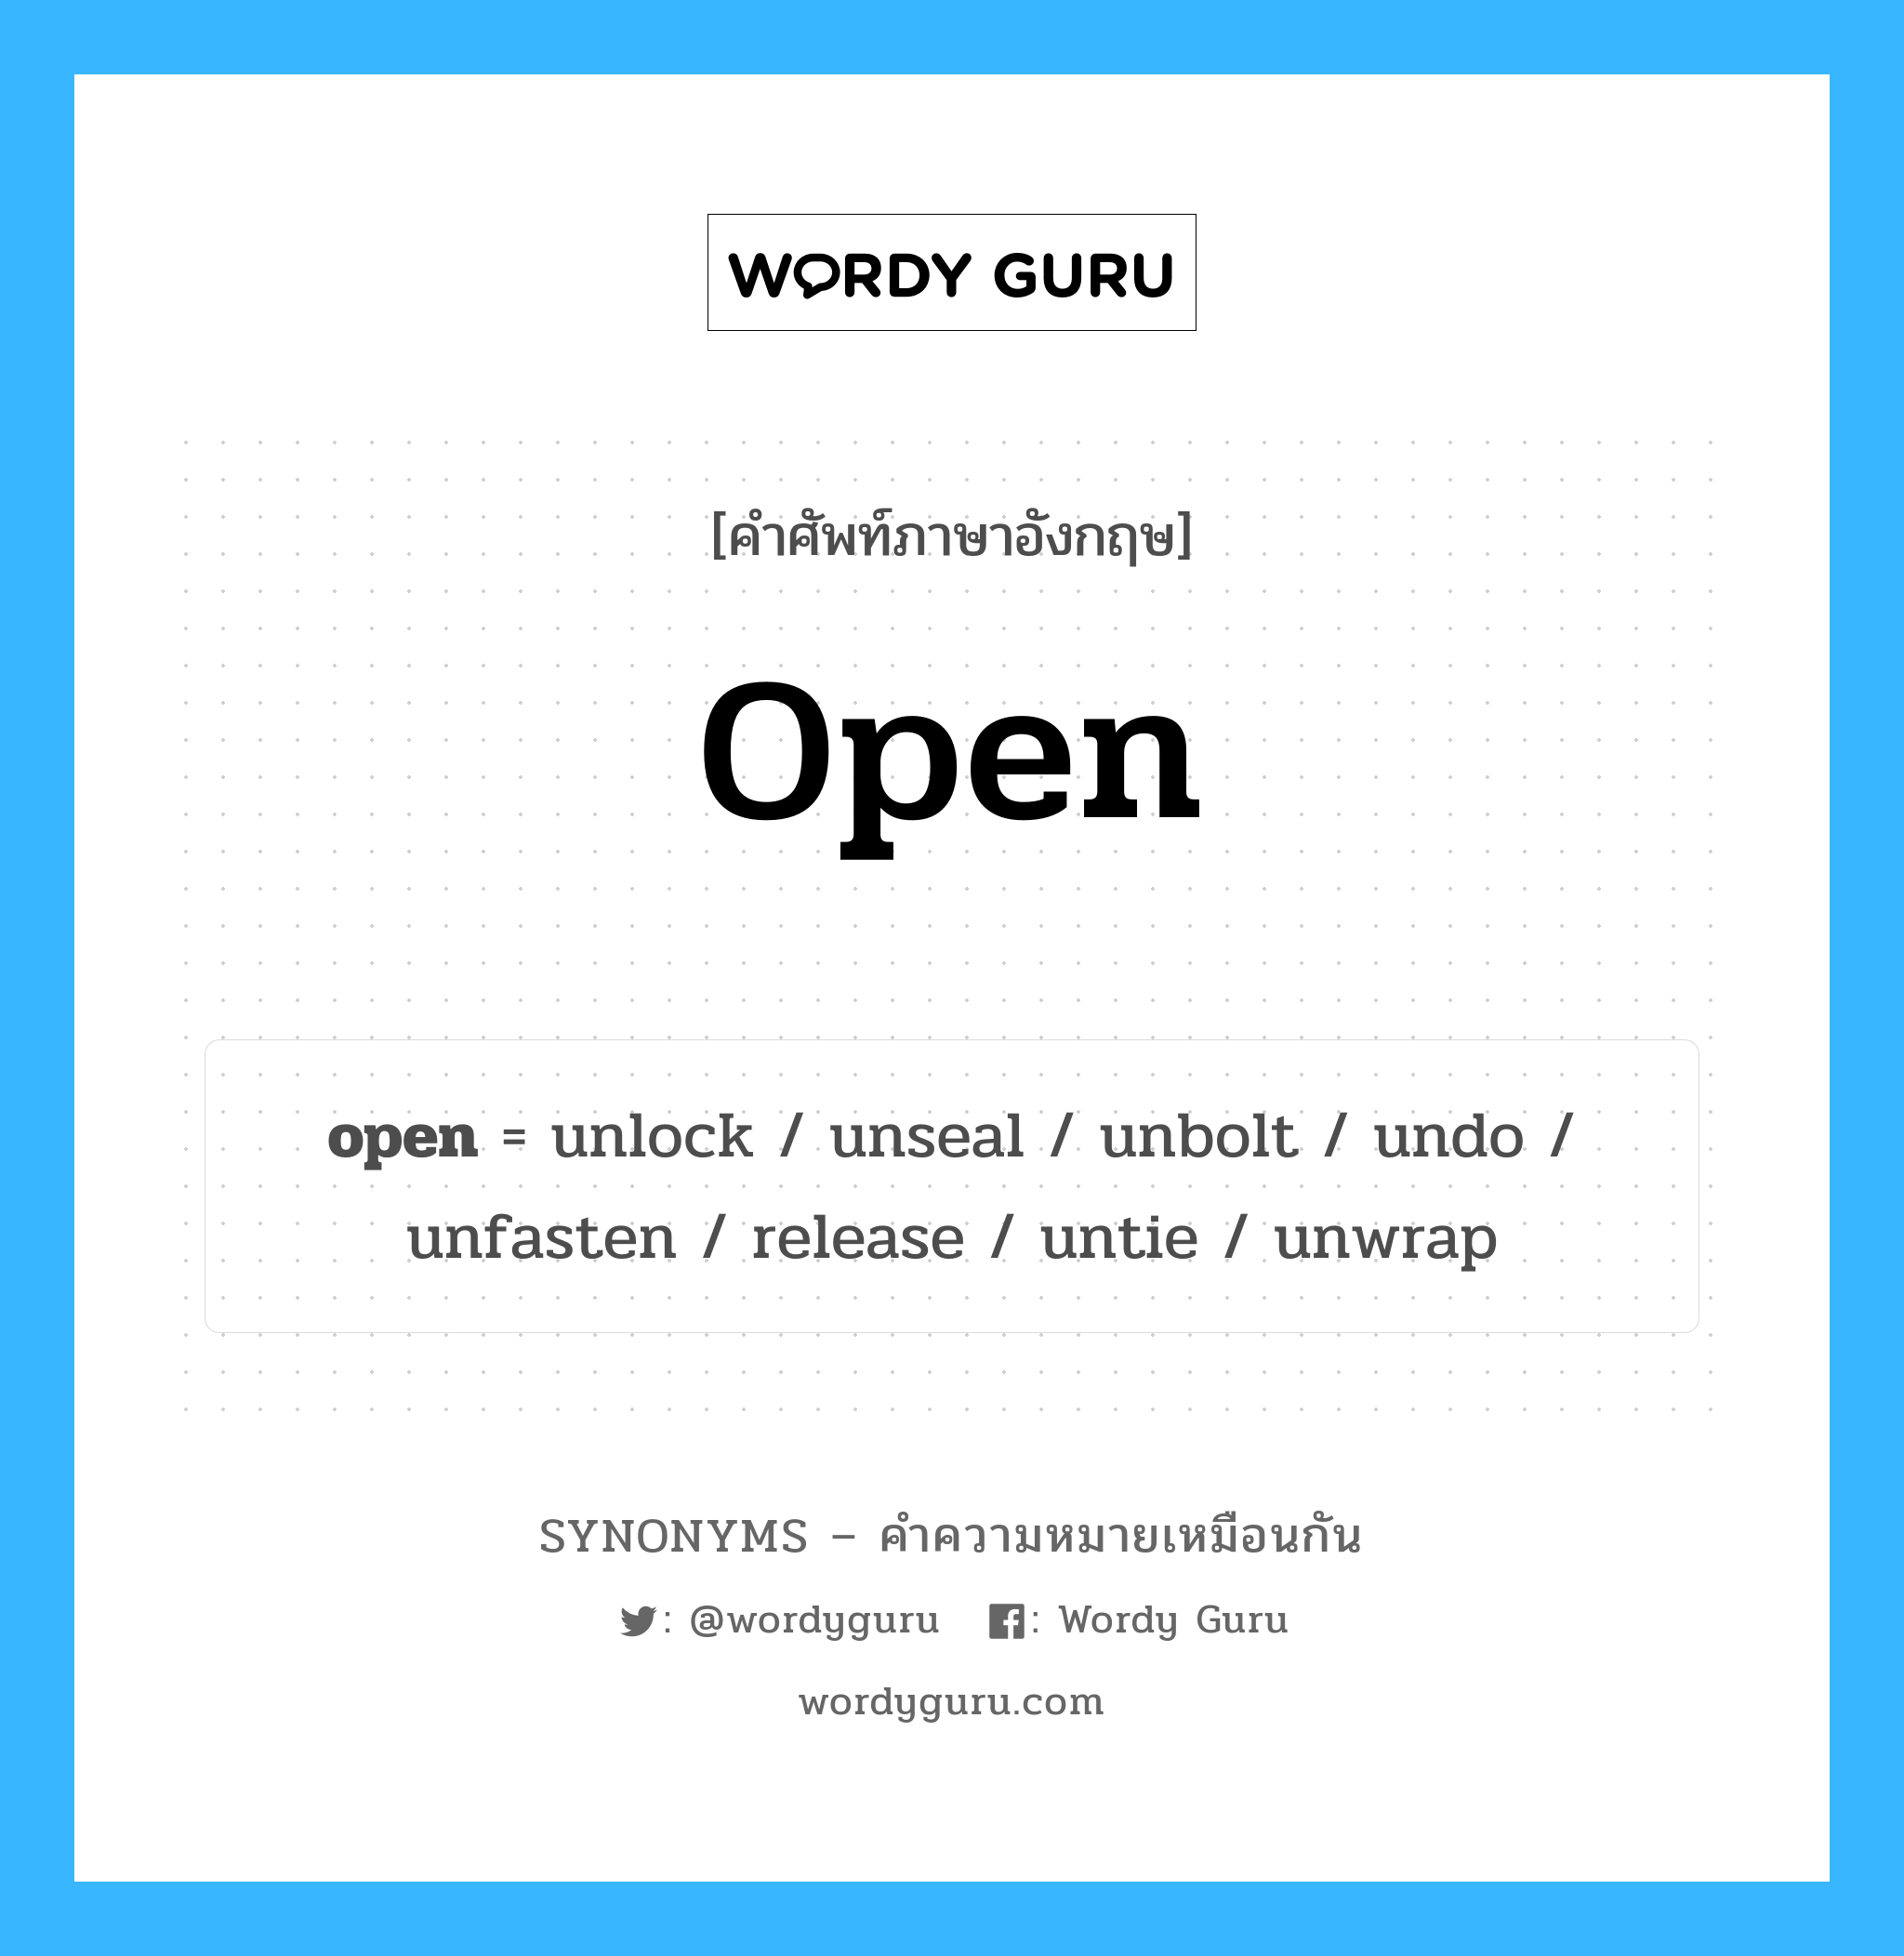 undo เป็นหนึ่งใน open และมีคำอื่น ๆ อีกดังนี้, คำศัพท์ภาษาอังกฤษ undo ความหมายคล้ายกันกับ open แปลว่า ยกเลิก หมวด open